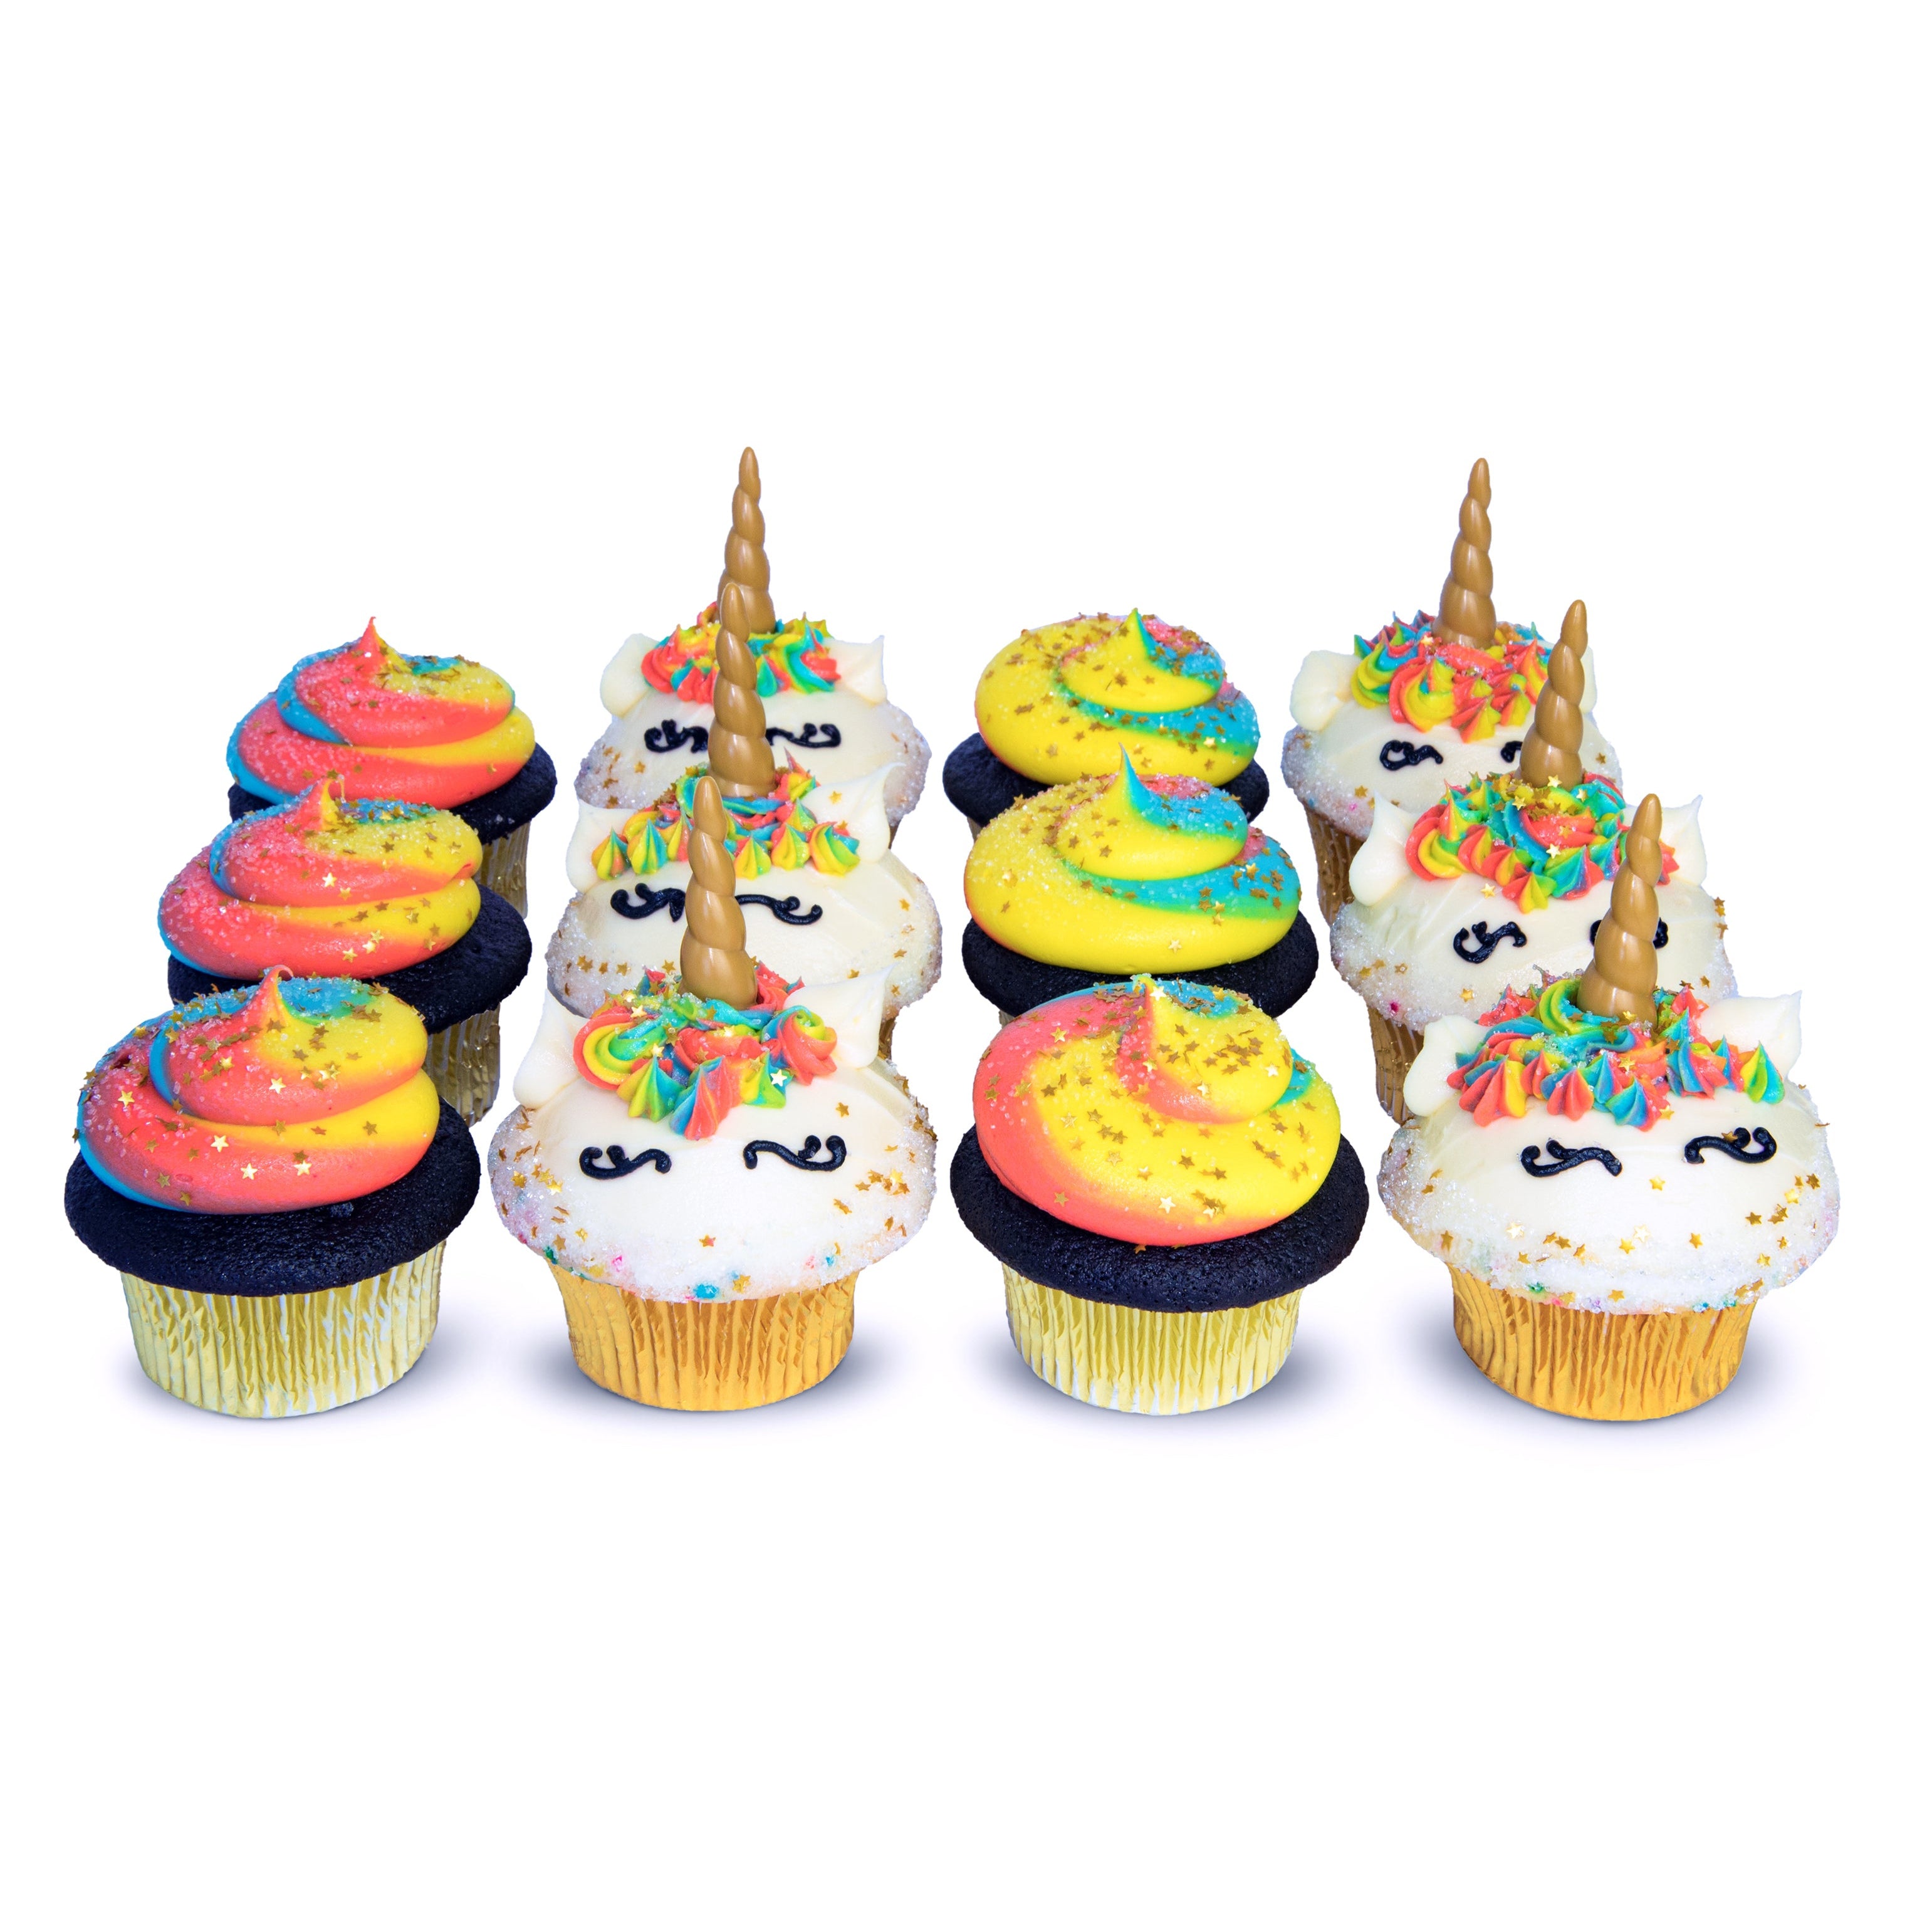 Pastel unicorn cake and cupcakes - Decorated Cake by - CakesDecor